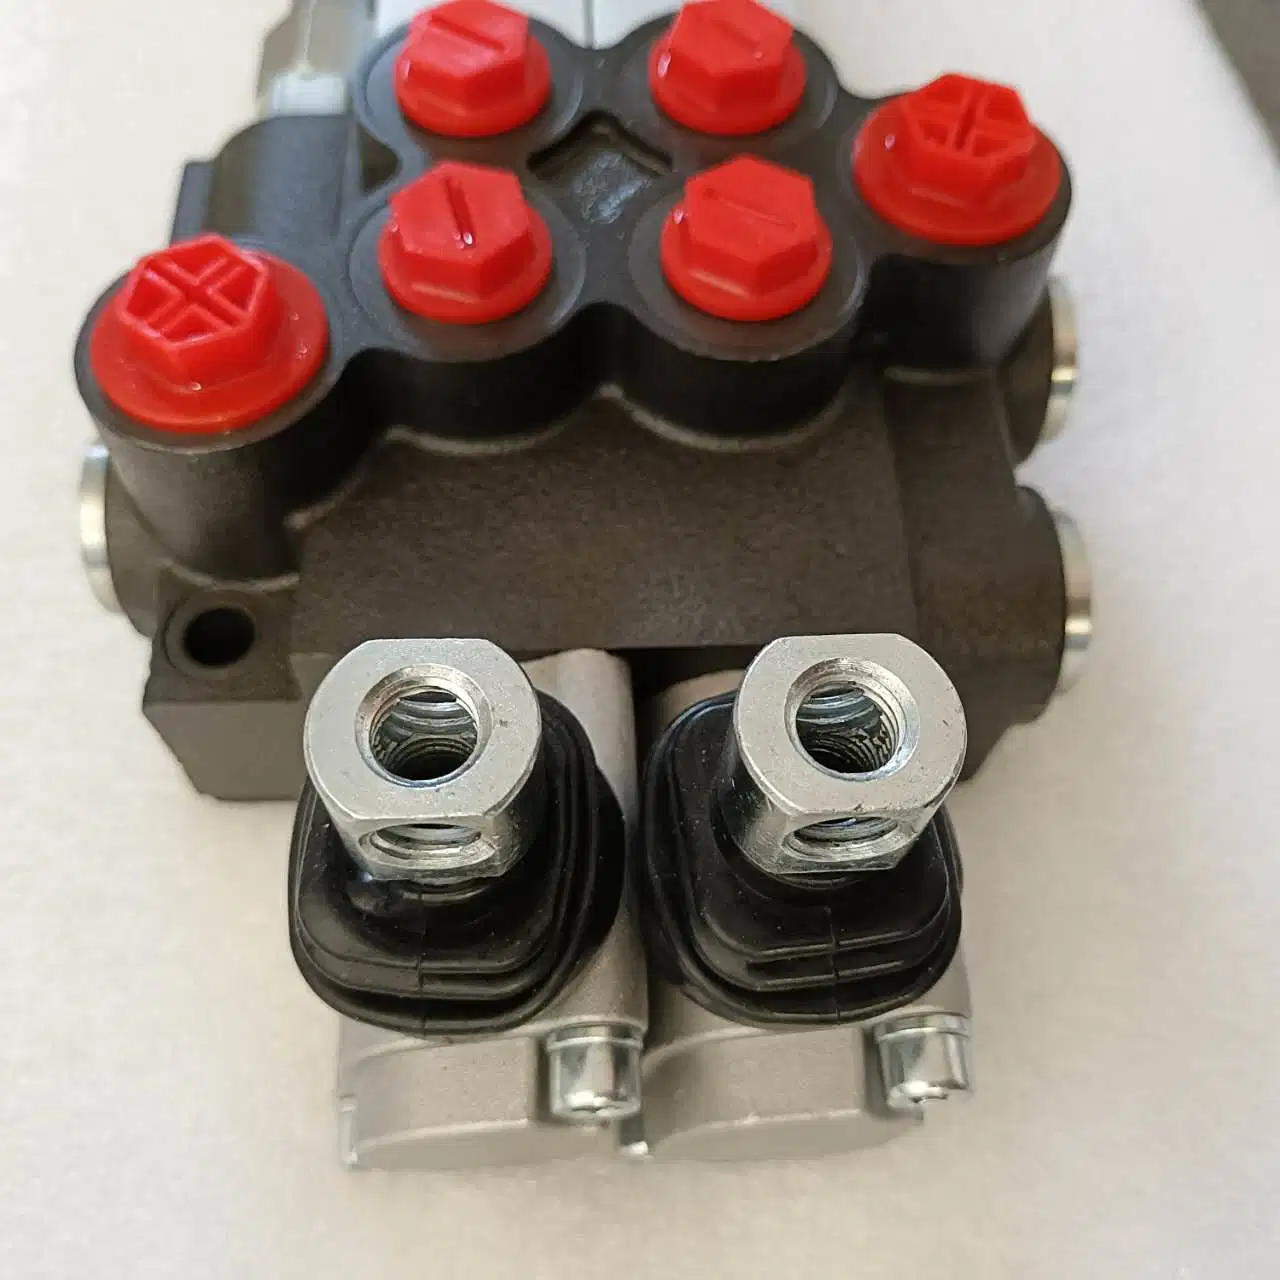 Источники питания серии P40 после параметра P40 электрического и гидравлического клапана управления для санитарных автомобилей